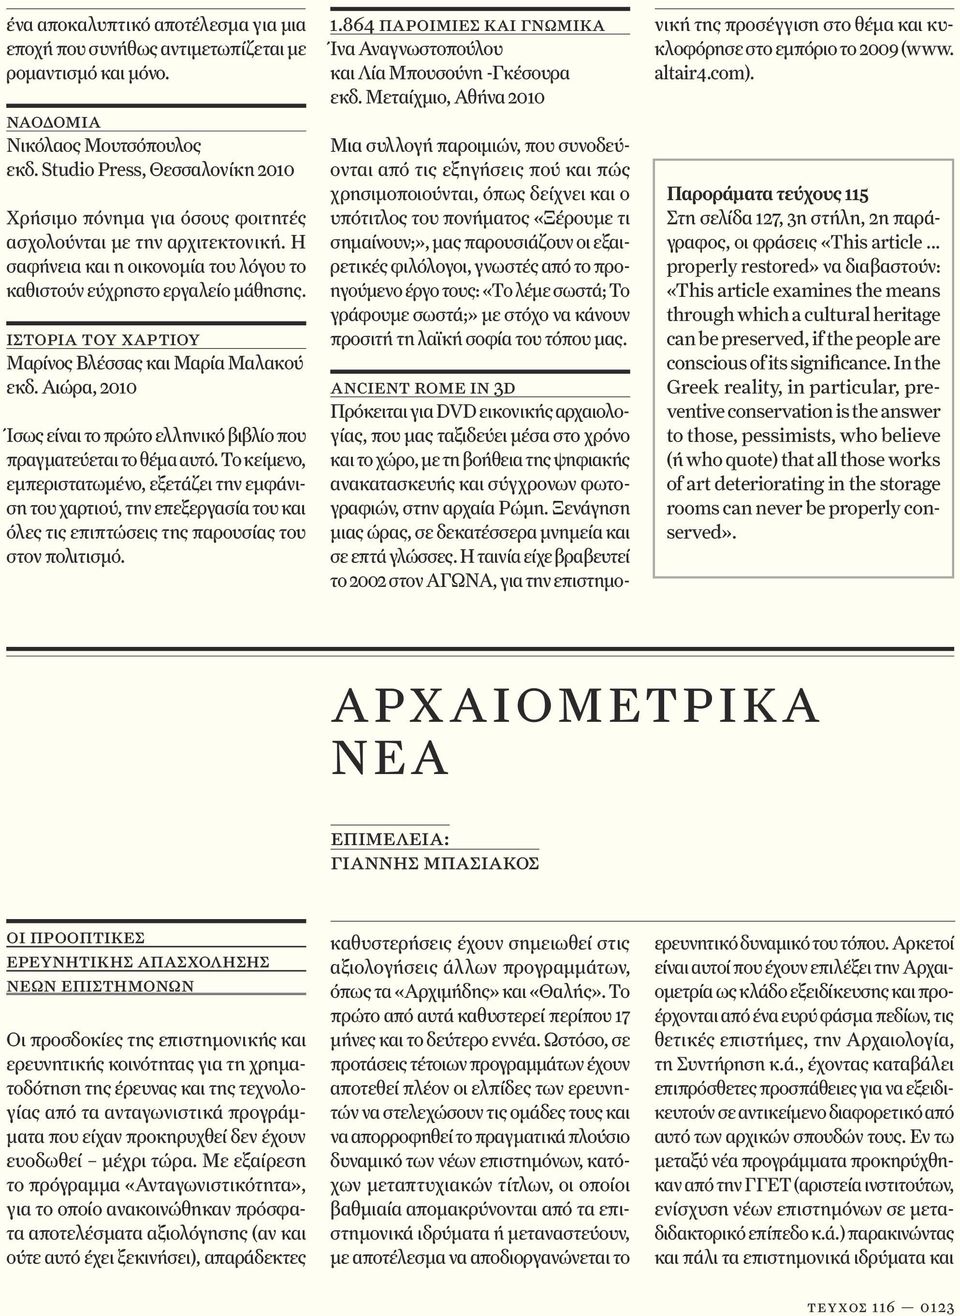 ιστορία του χαρτιού Μαρίνος Βλέσσας και Μαρία Μαλακού εκδ. Αιώρα, 2010 Ίσως είναι το πρώτο ελληνικό βιβλίο που πραγματεύεται το θέμα αυτό.